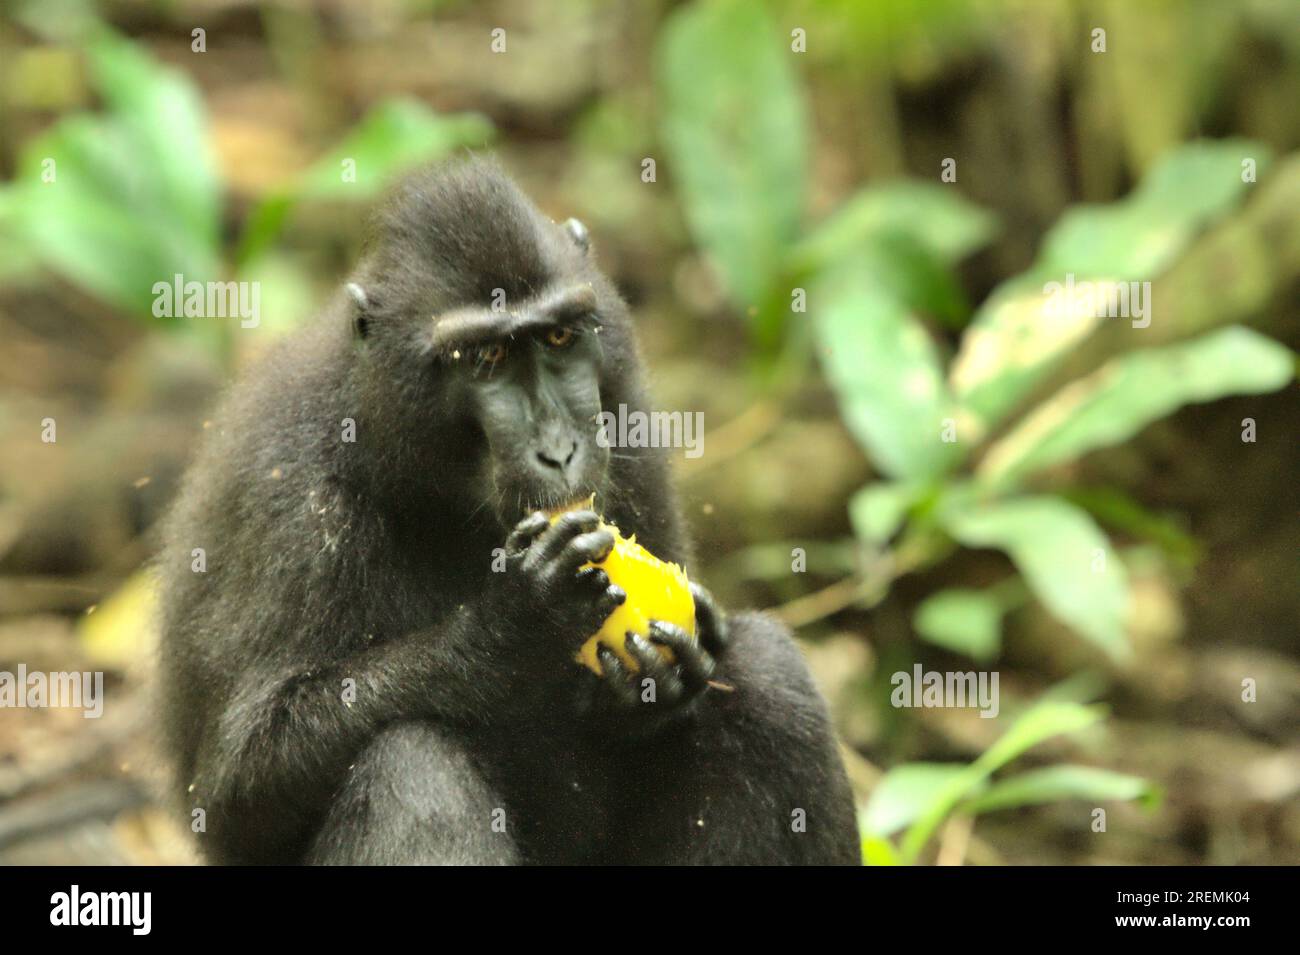 Eine Macaca nigra (Celebes Crested Macaque) befindet sich auf dem Waldboden, während sie eine Frucht im Naturschutzgebiet Tangkoko, North Sulawesi, Indonesien, isst. Stockfoto